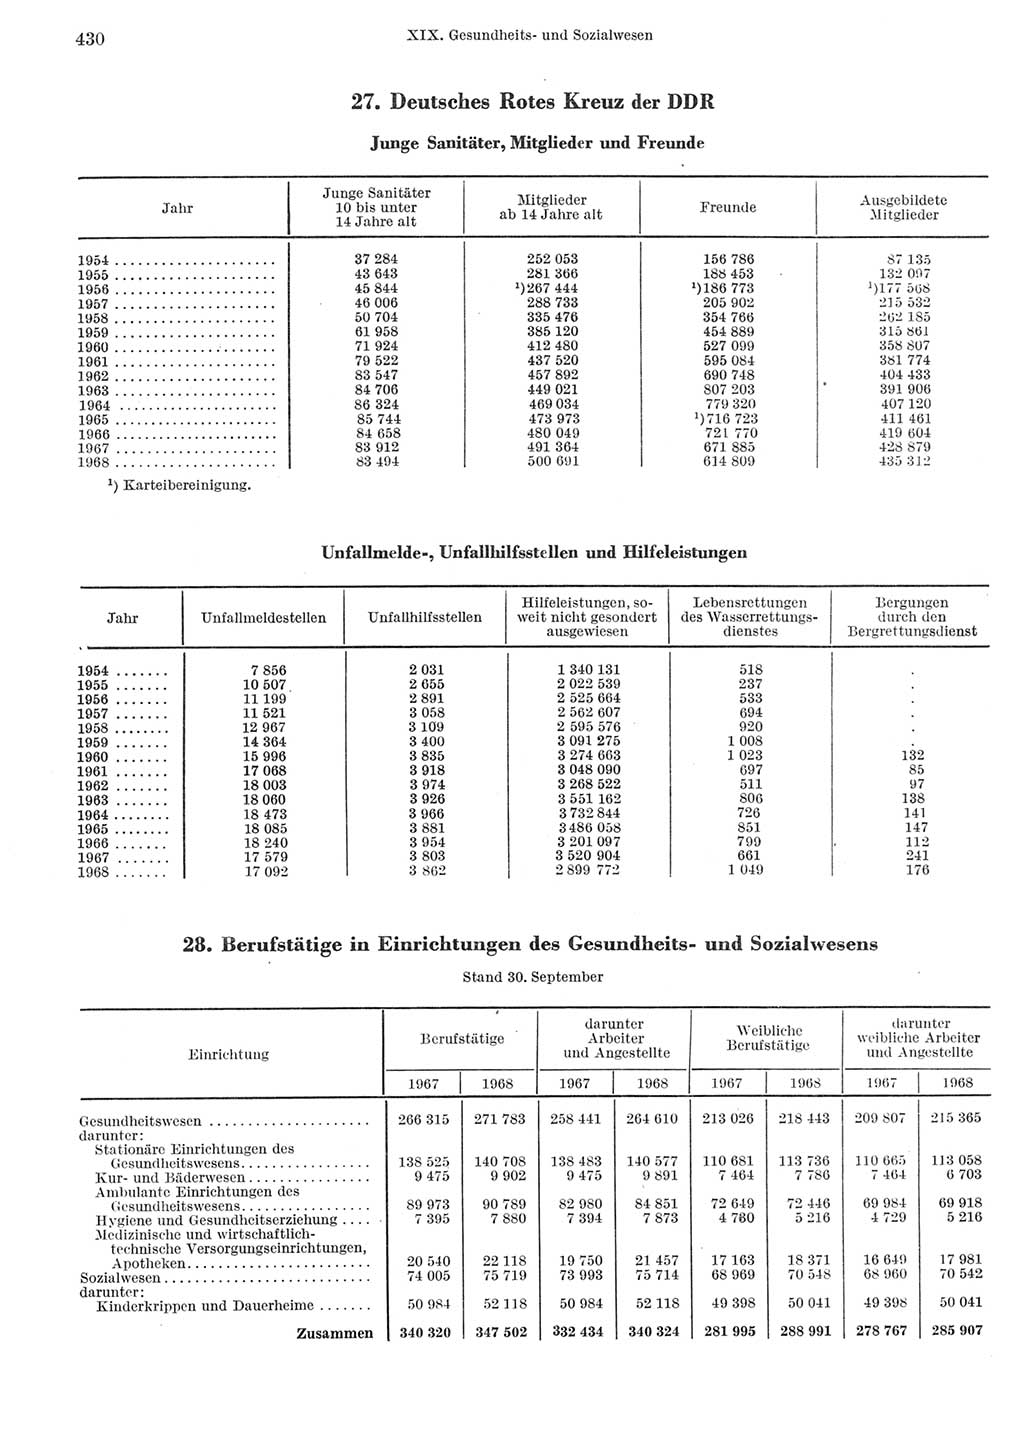 Statistisches Jahrbuch der Deutschen Demokratischen Republik (DDR) 1969, Seite 430 (Stat. Jb. DDR 1969, S. 430)